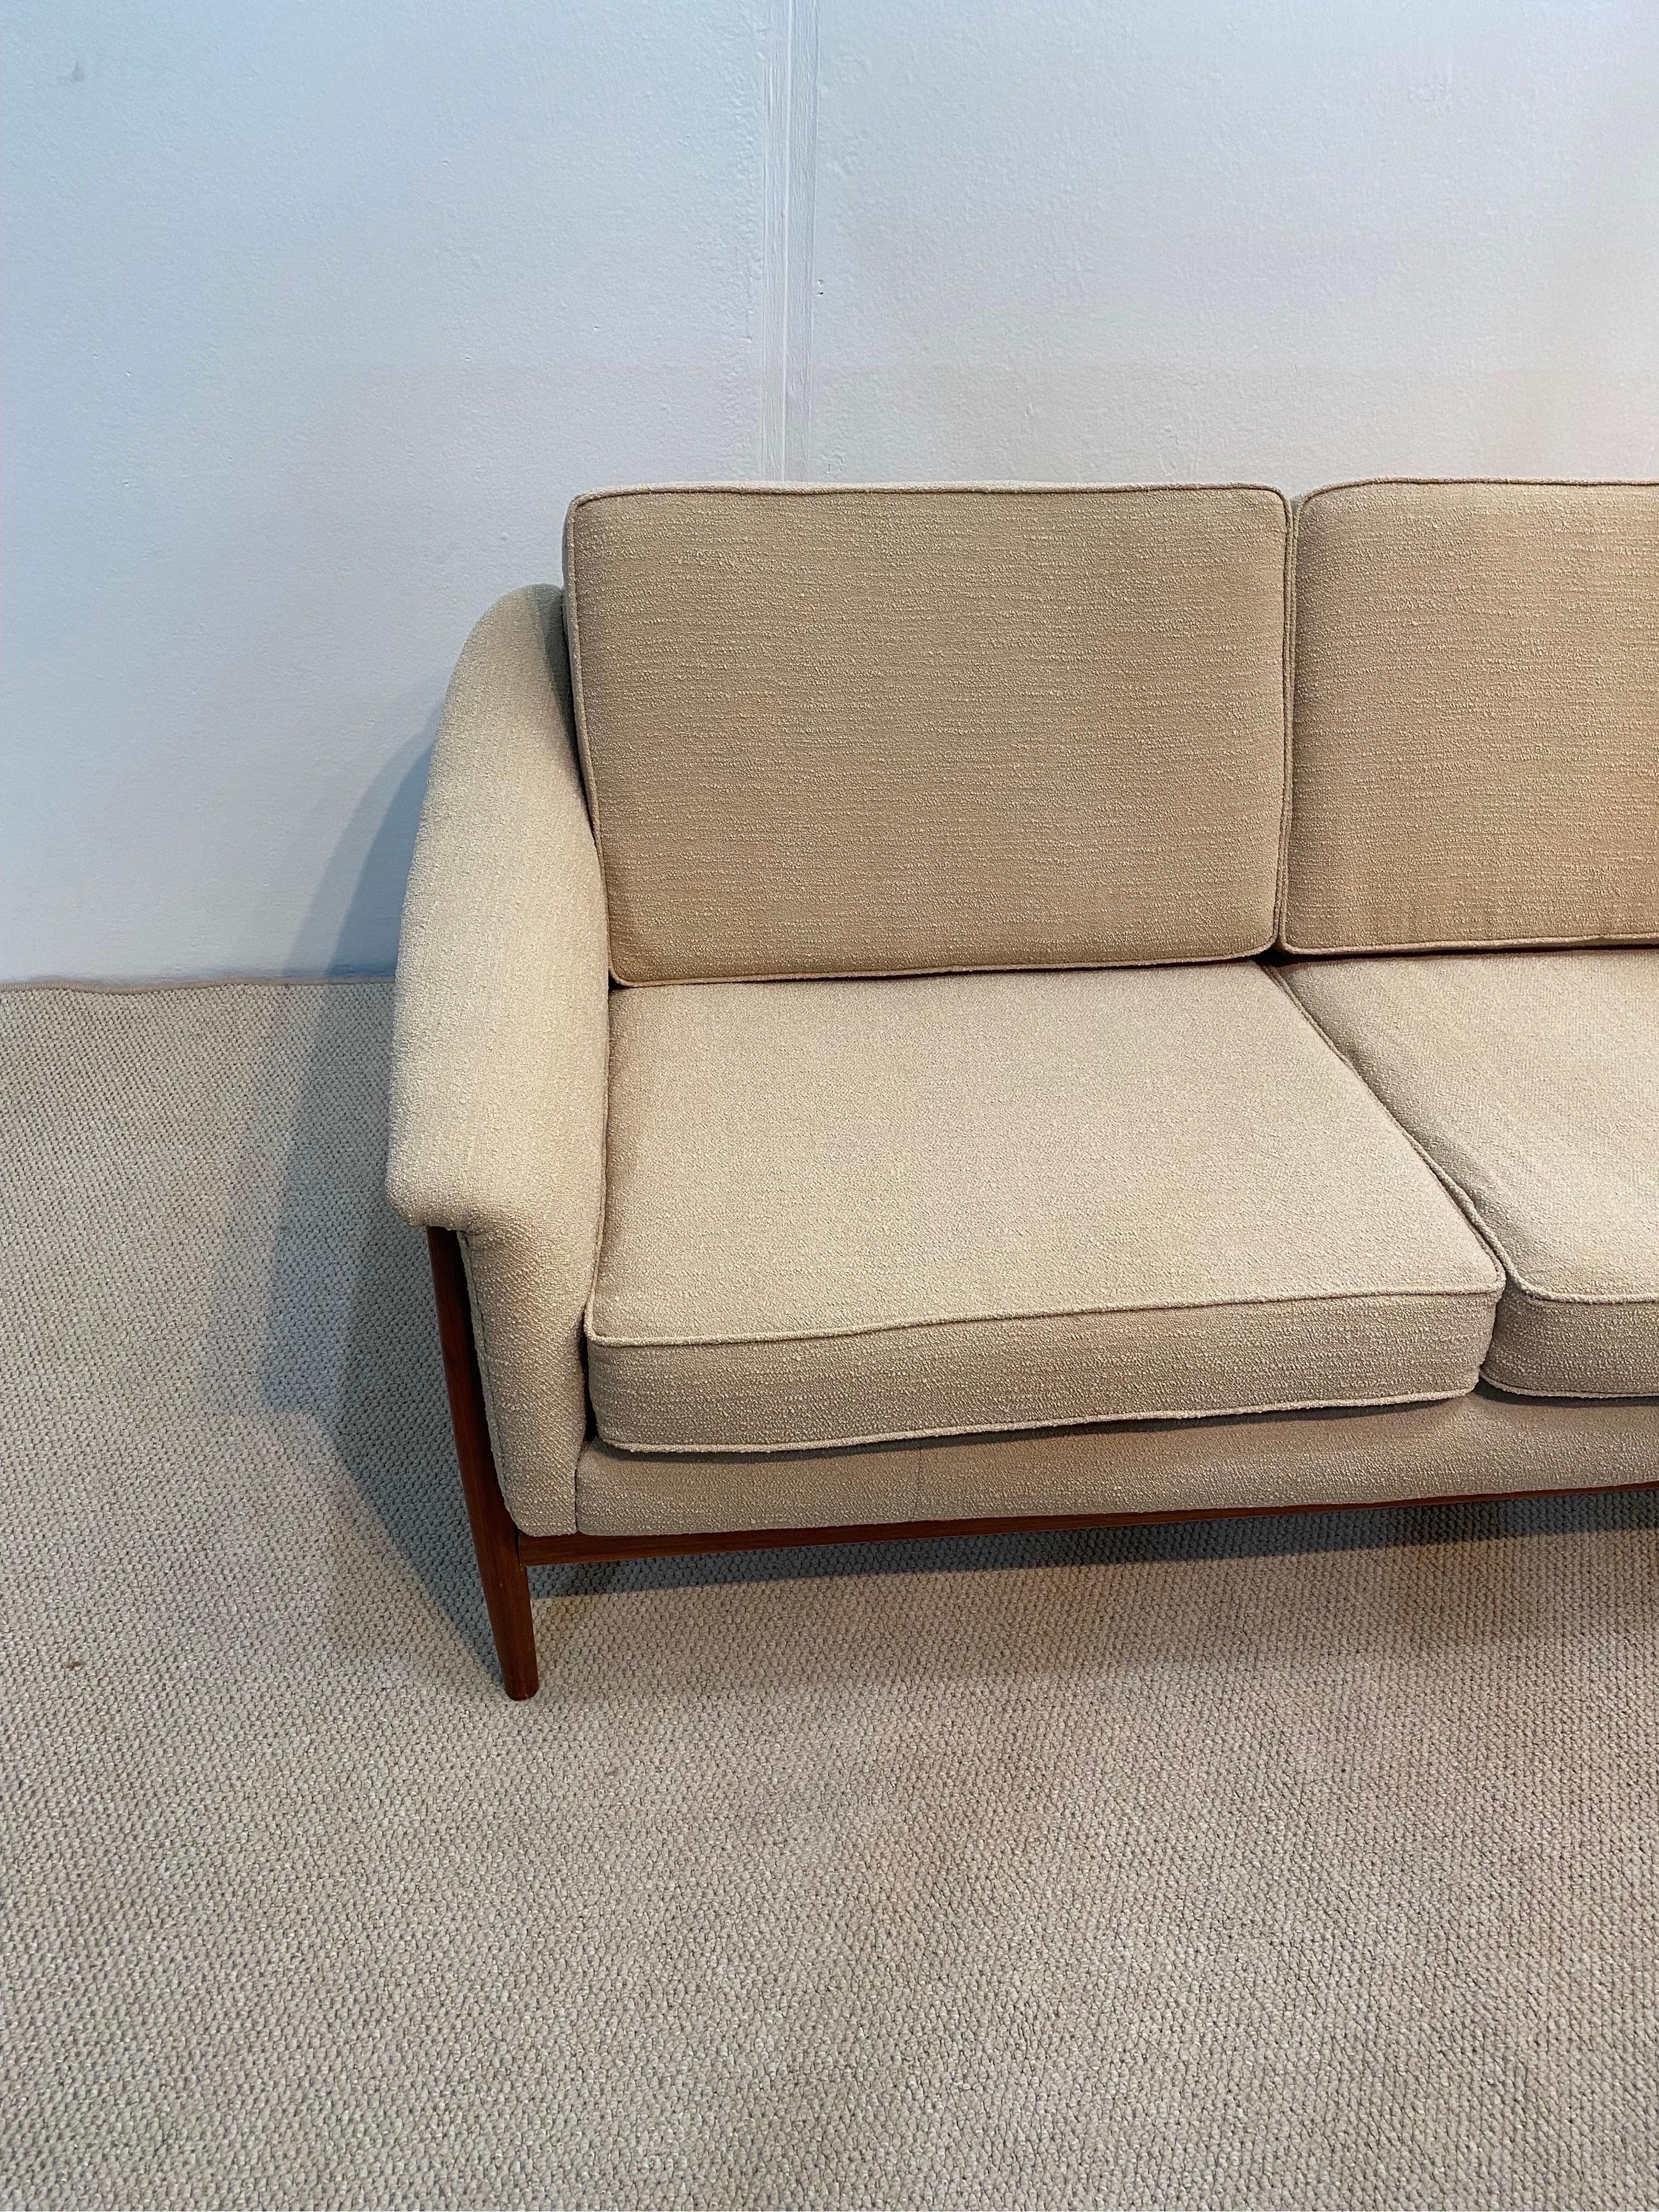 Folke Ohlsson for Dux Sweden Mid Century Modern Sofa 1960s Boucle  8